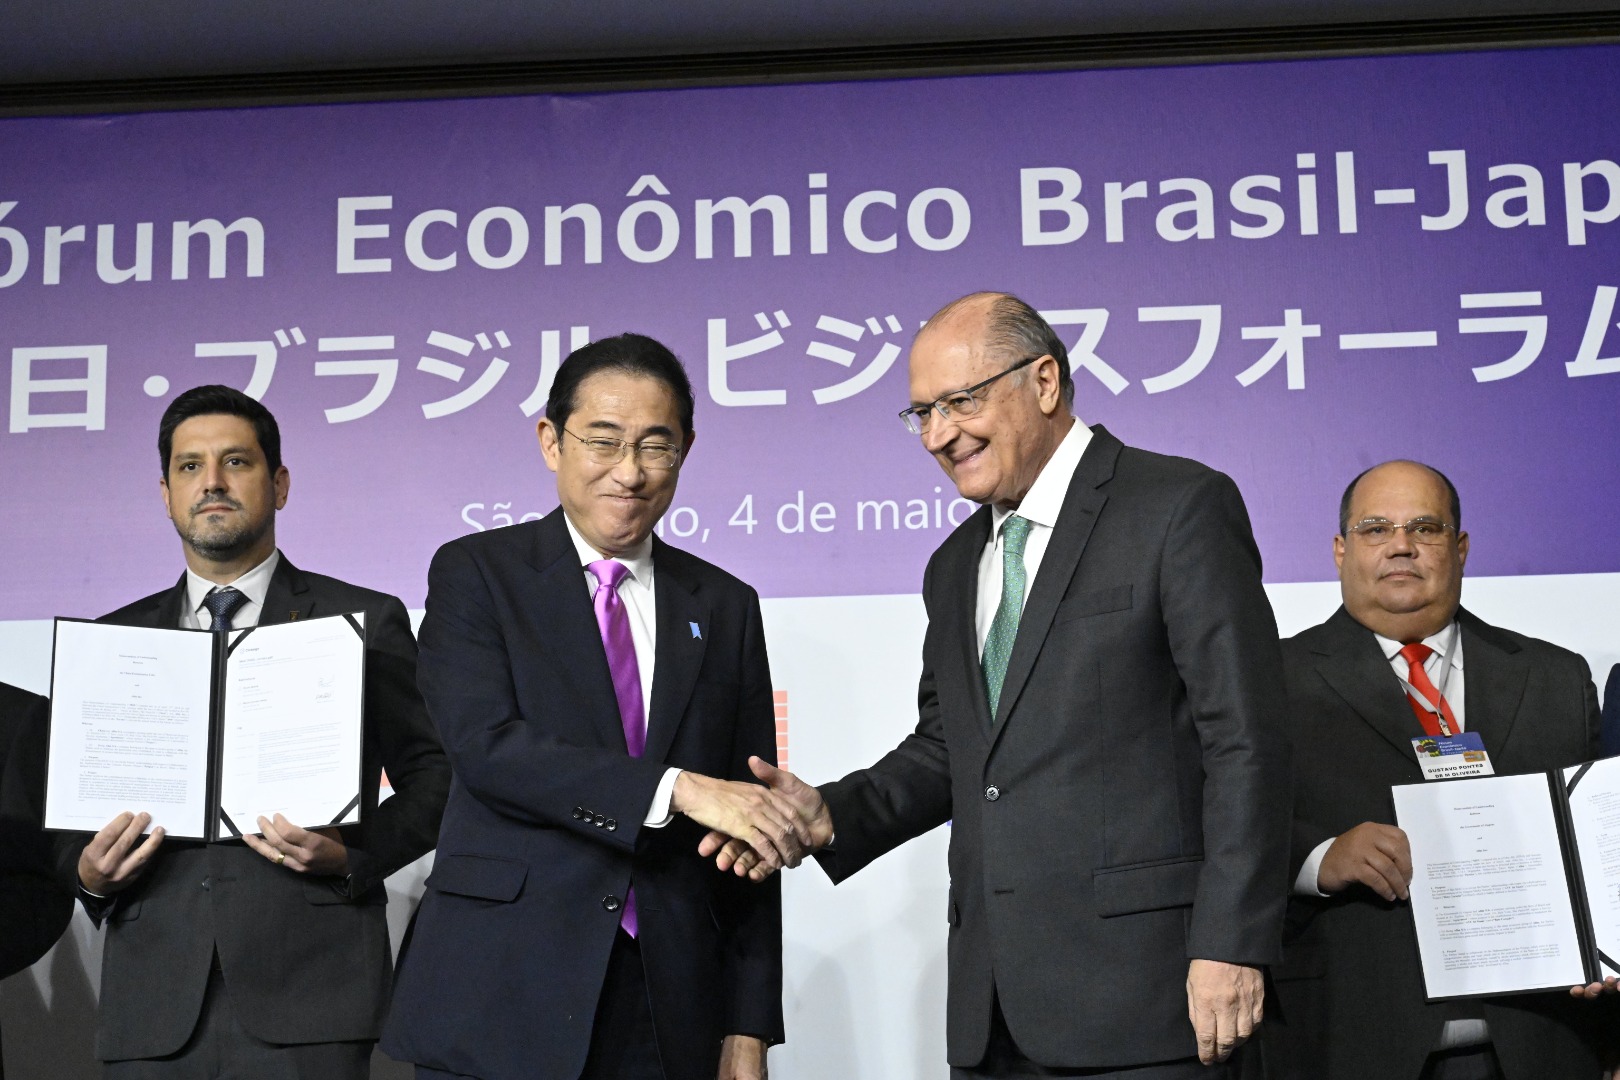 Vice-presidente do Brasil participa com primeiro-ministro japonês do Fórum Empresarial Brasil-Japão. O evento sela cerca de 30 acordos de cooperação entre instituições públicas e privadas dos dois países